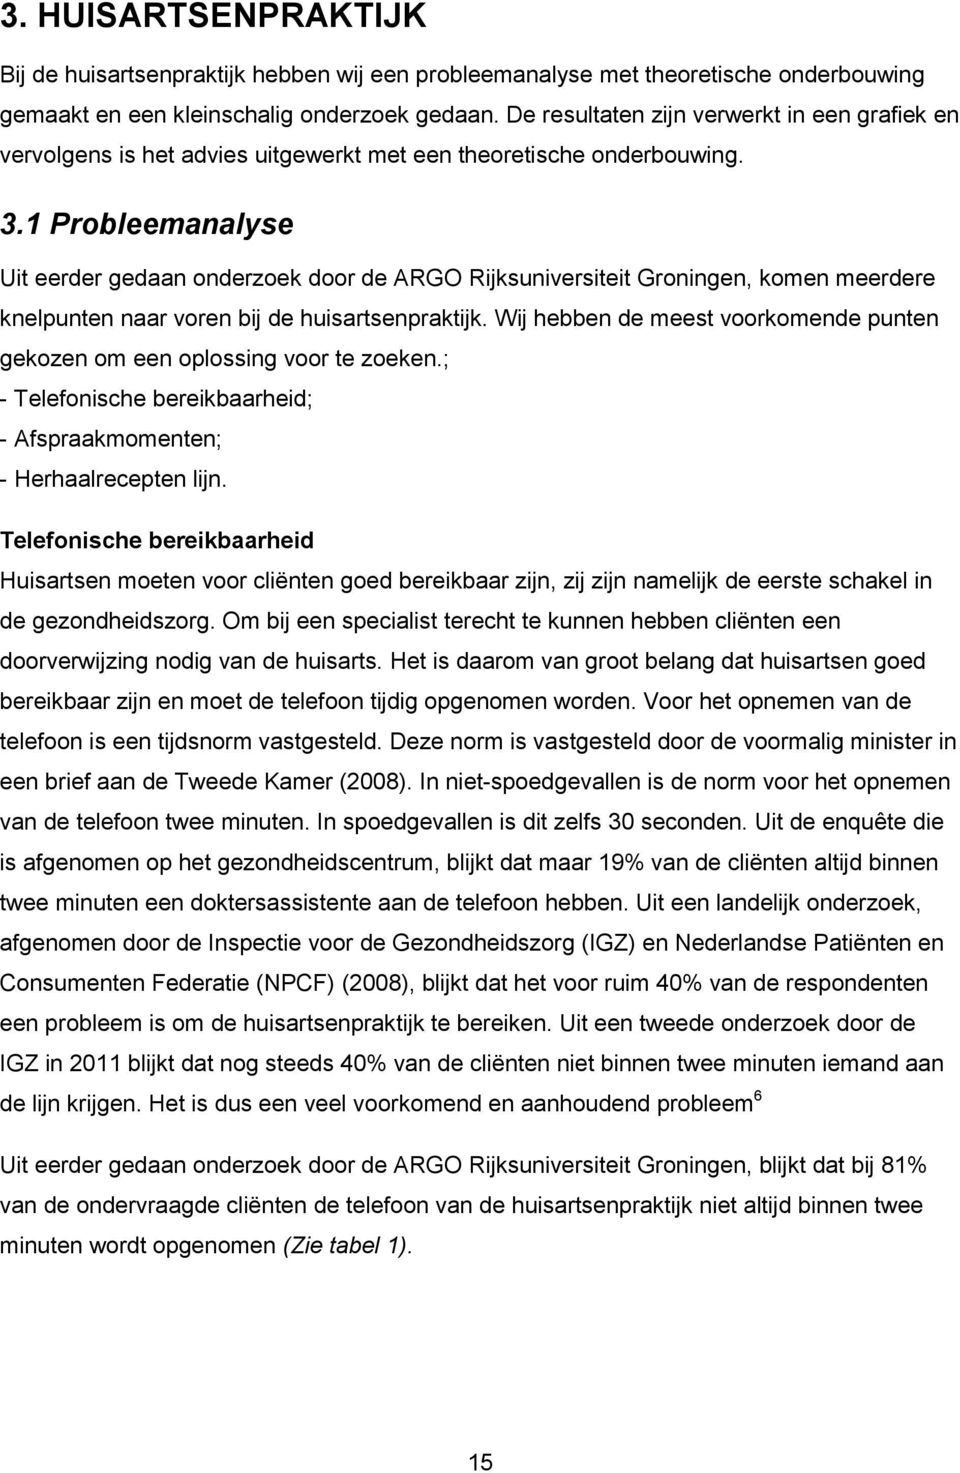 1 Probleemanalyse Uit eerder gedaan onderzoek door de ARGO Rijksuniversiteit Groningen, komen meerdere knelpunten naar voren bij de huisartsenpraktijk.